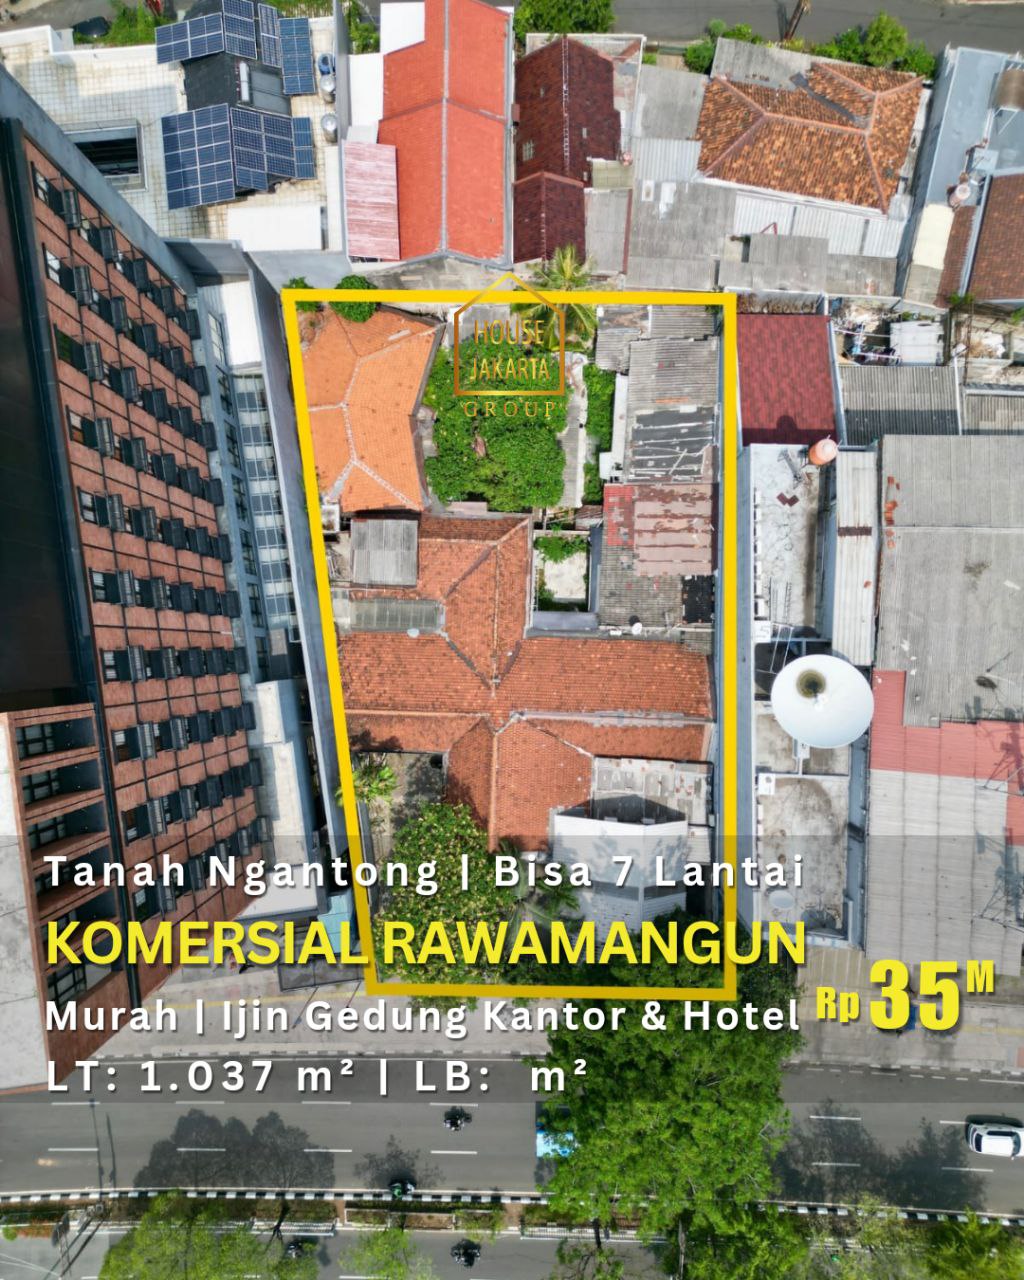 Komersial Rawamangun Tanah Ngantong •  Bisa dibangun 7 Lantai • Murah • Ijin Gedung, Kantor & Hotel